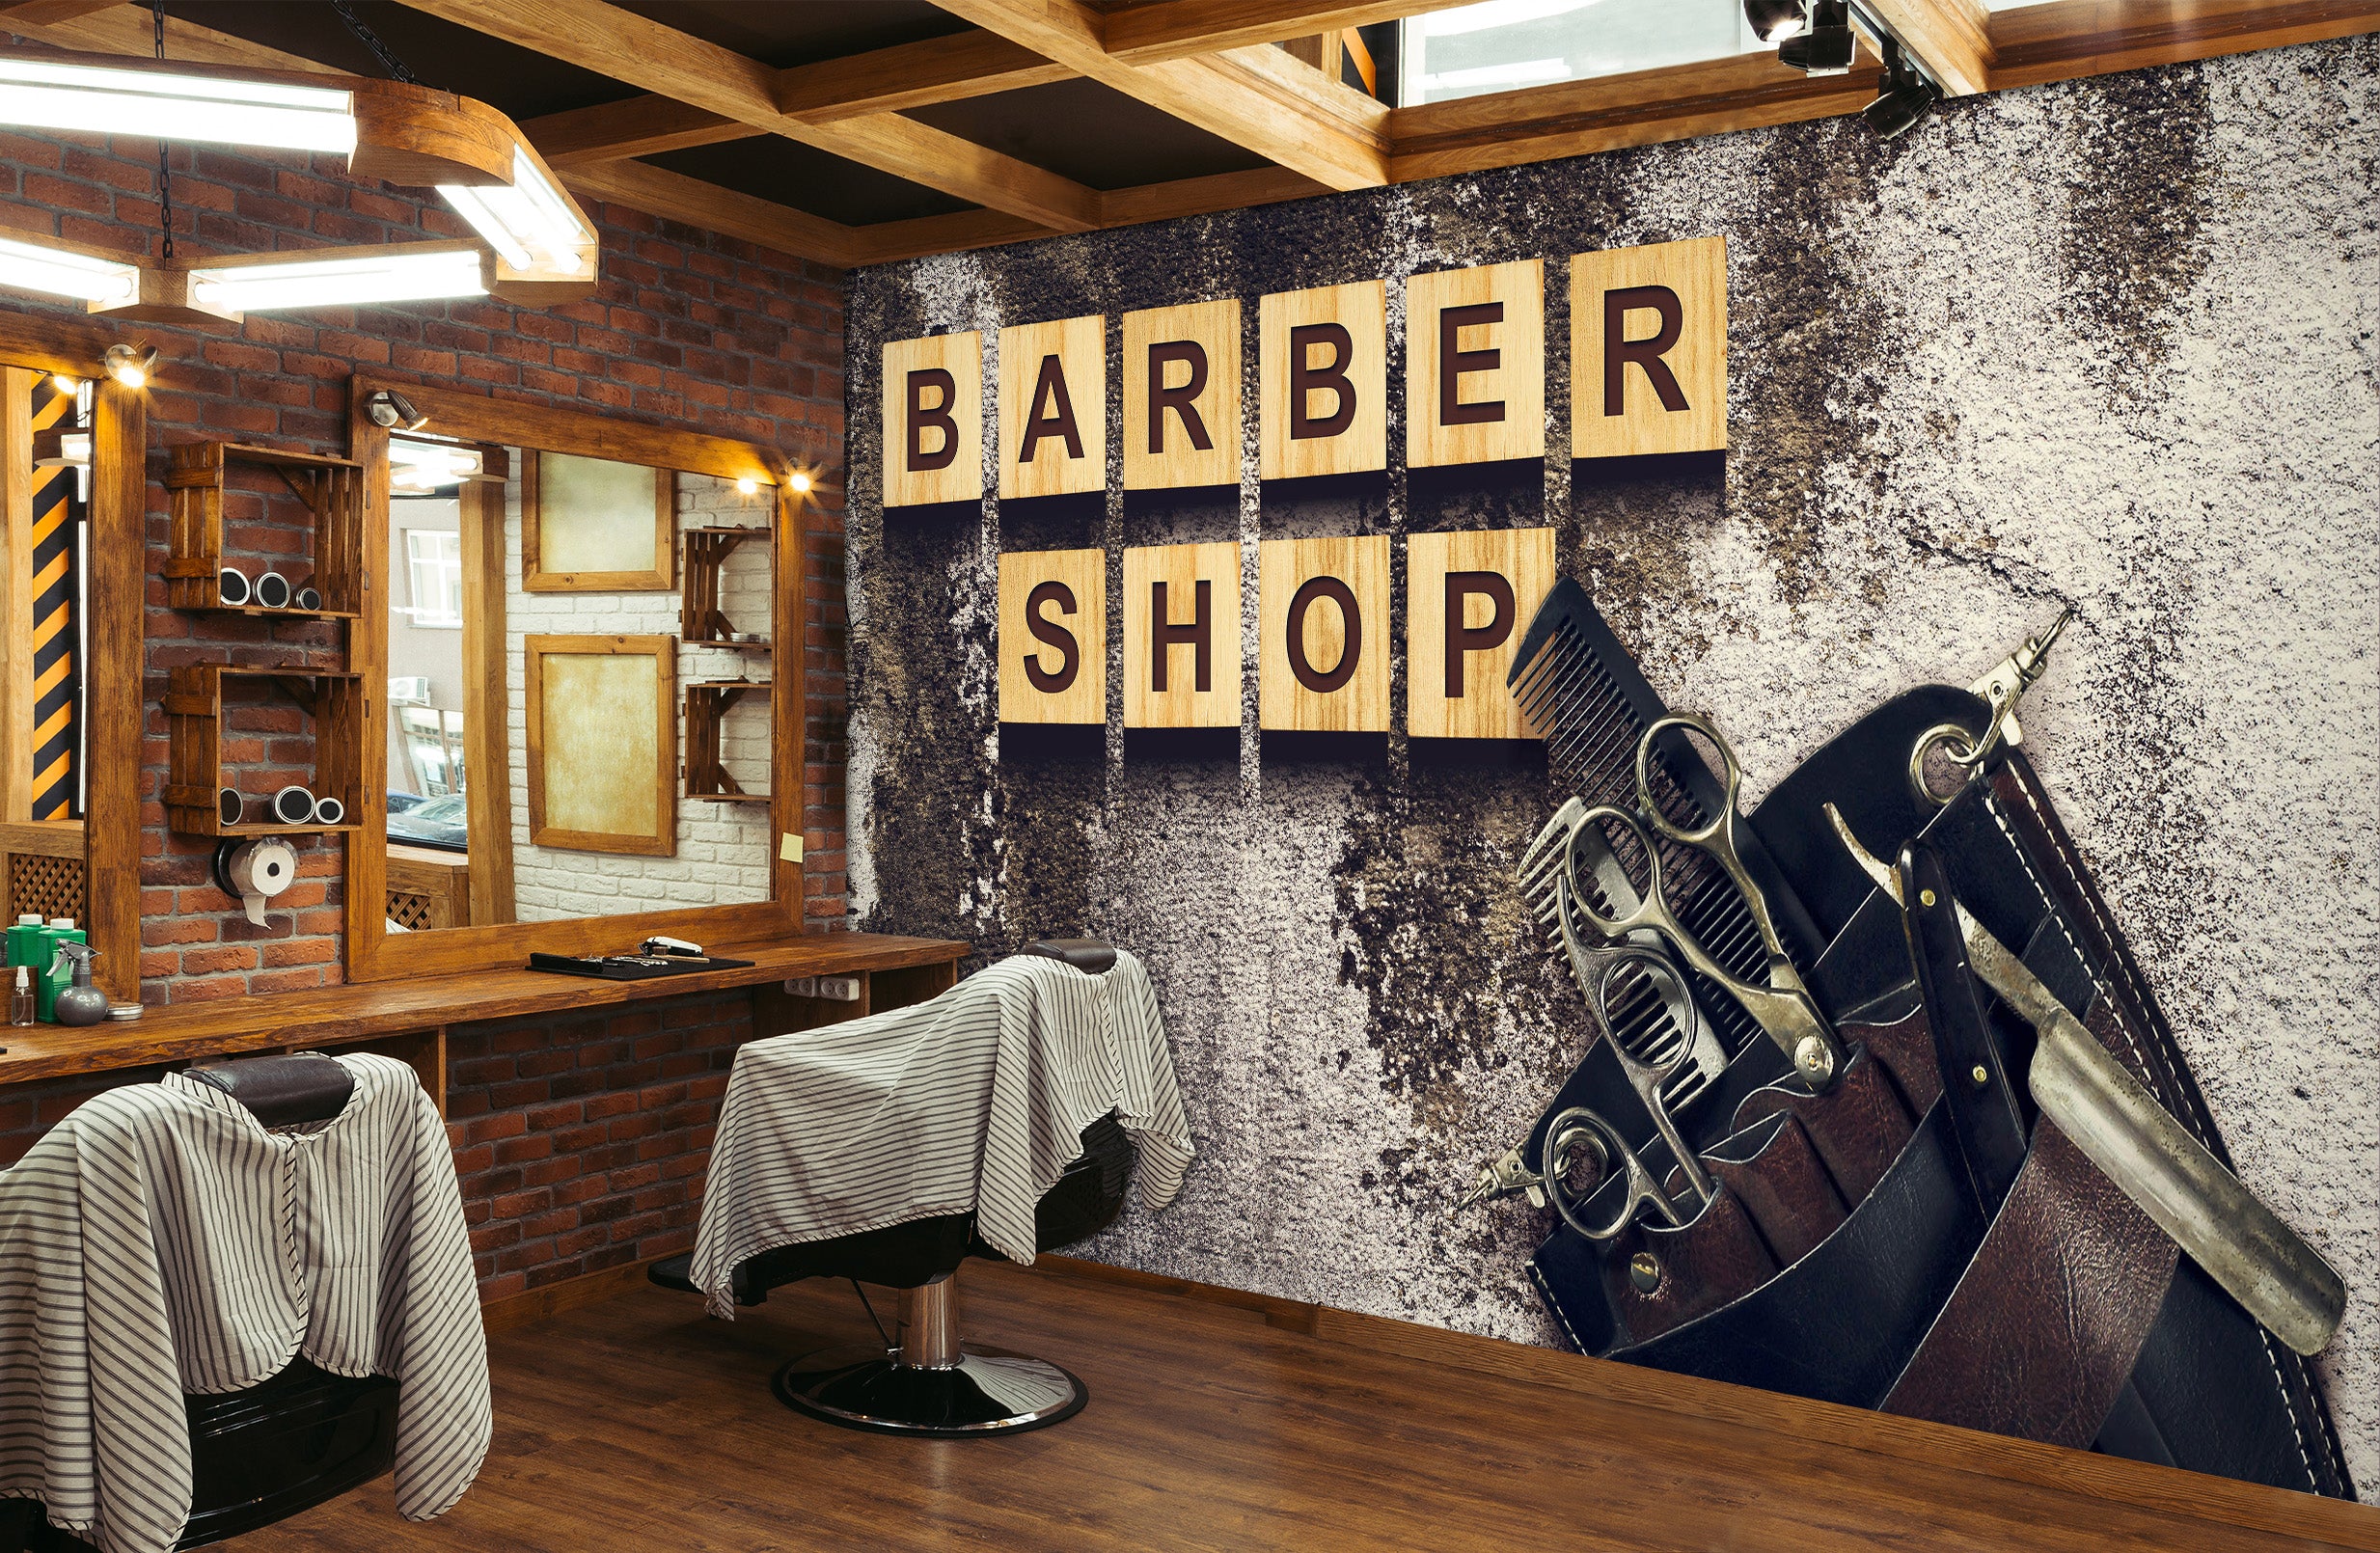 3D Letter Block Scissors 115166 Barber Shop Wall Murals